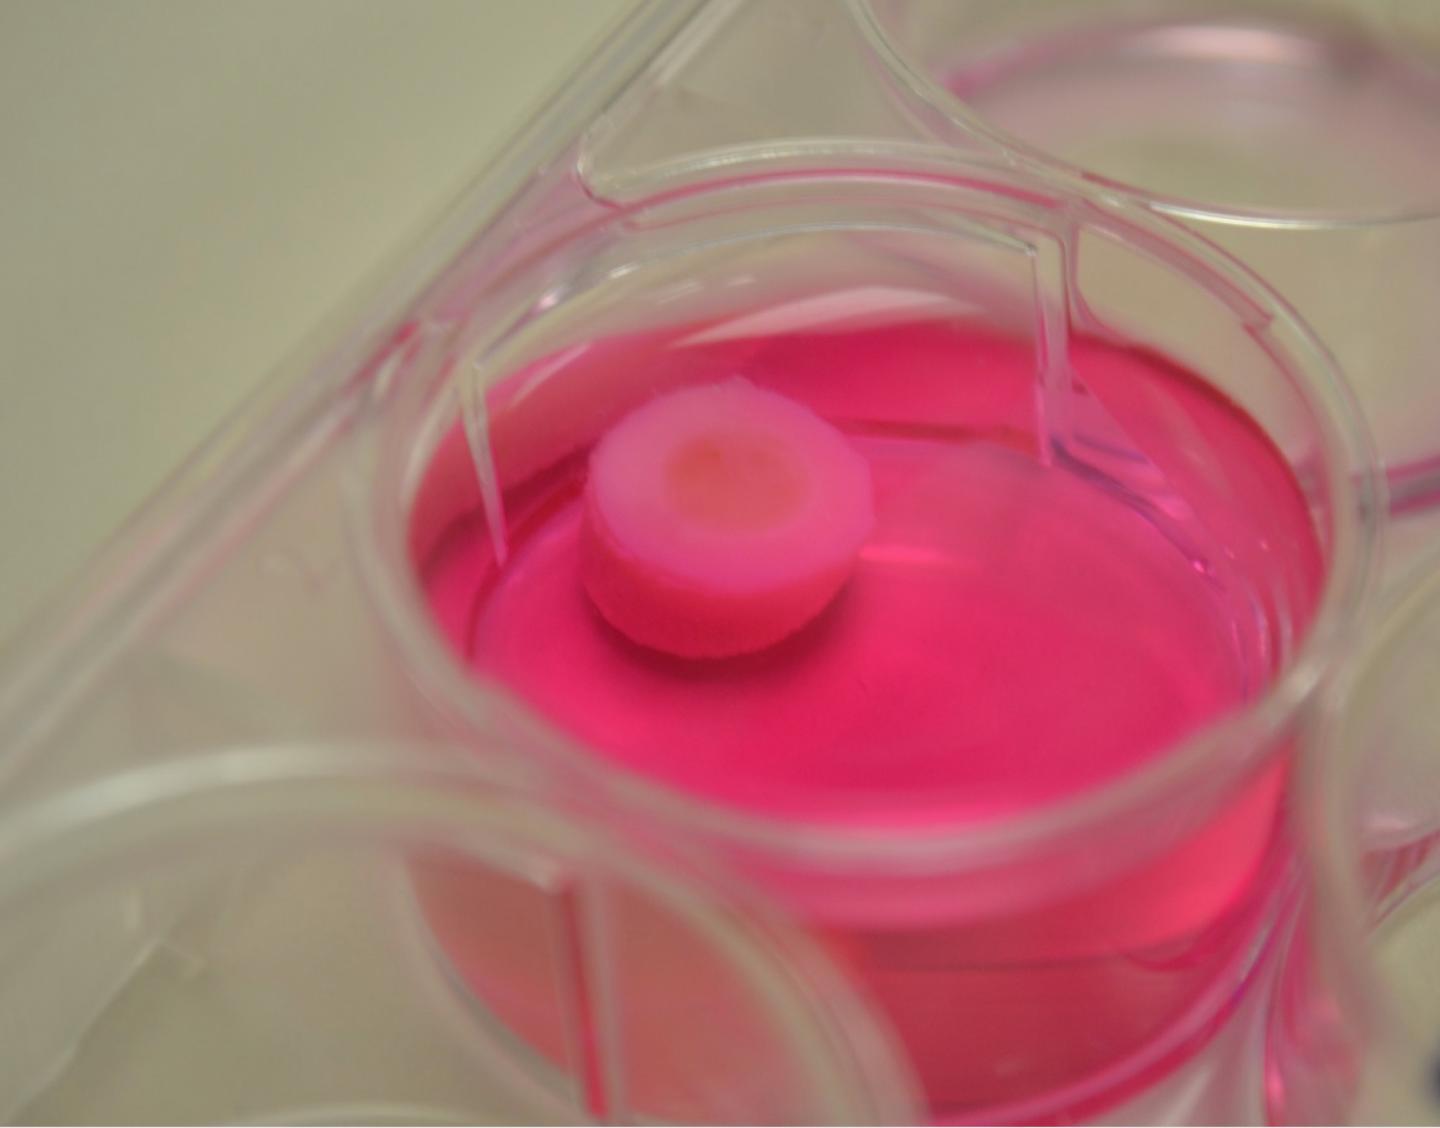 3D printed bio cartilage